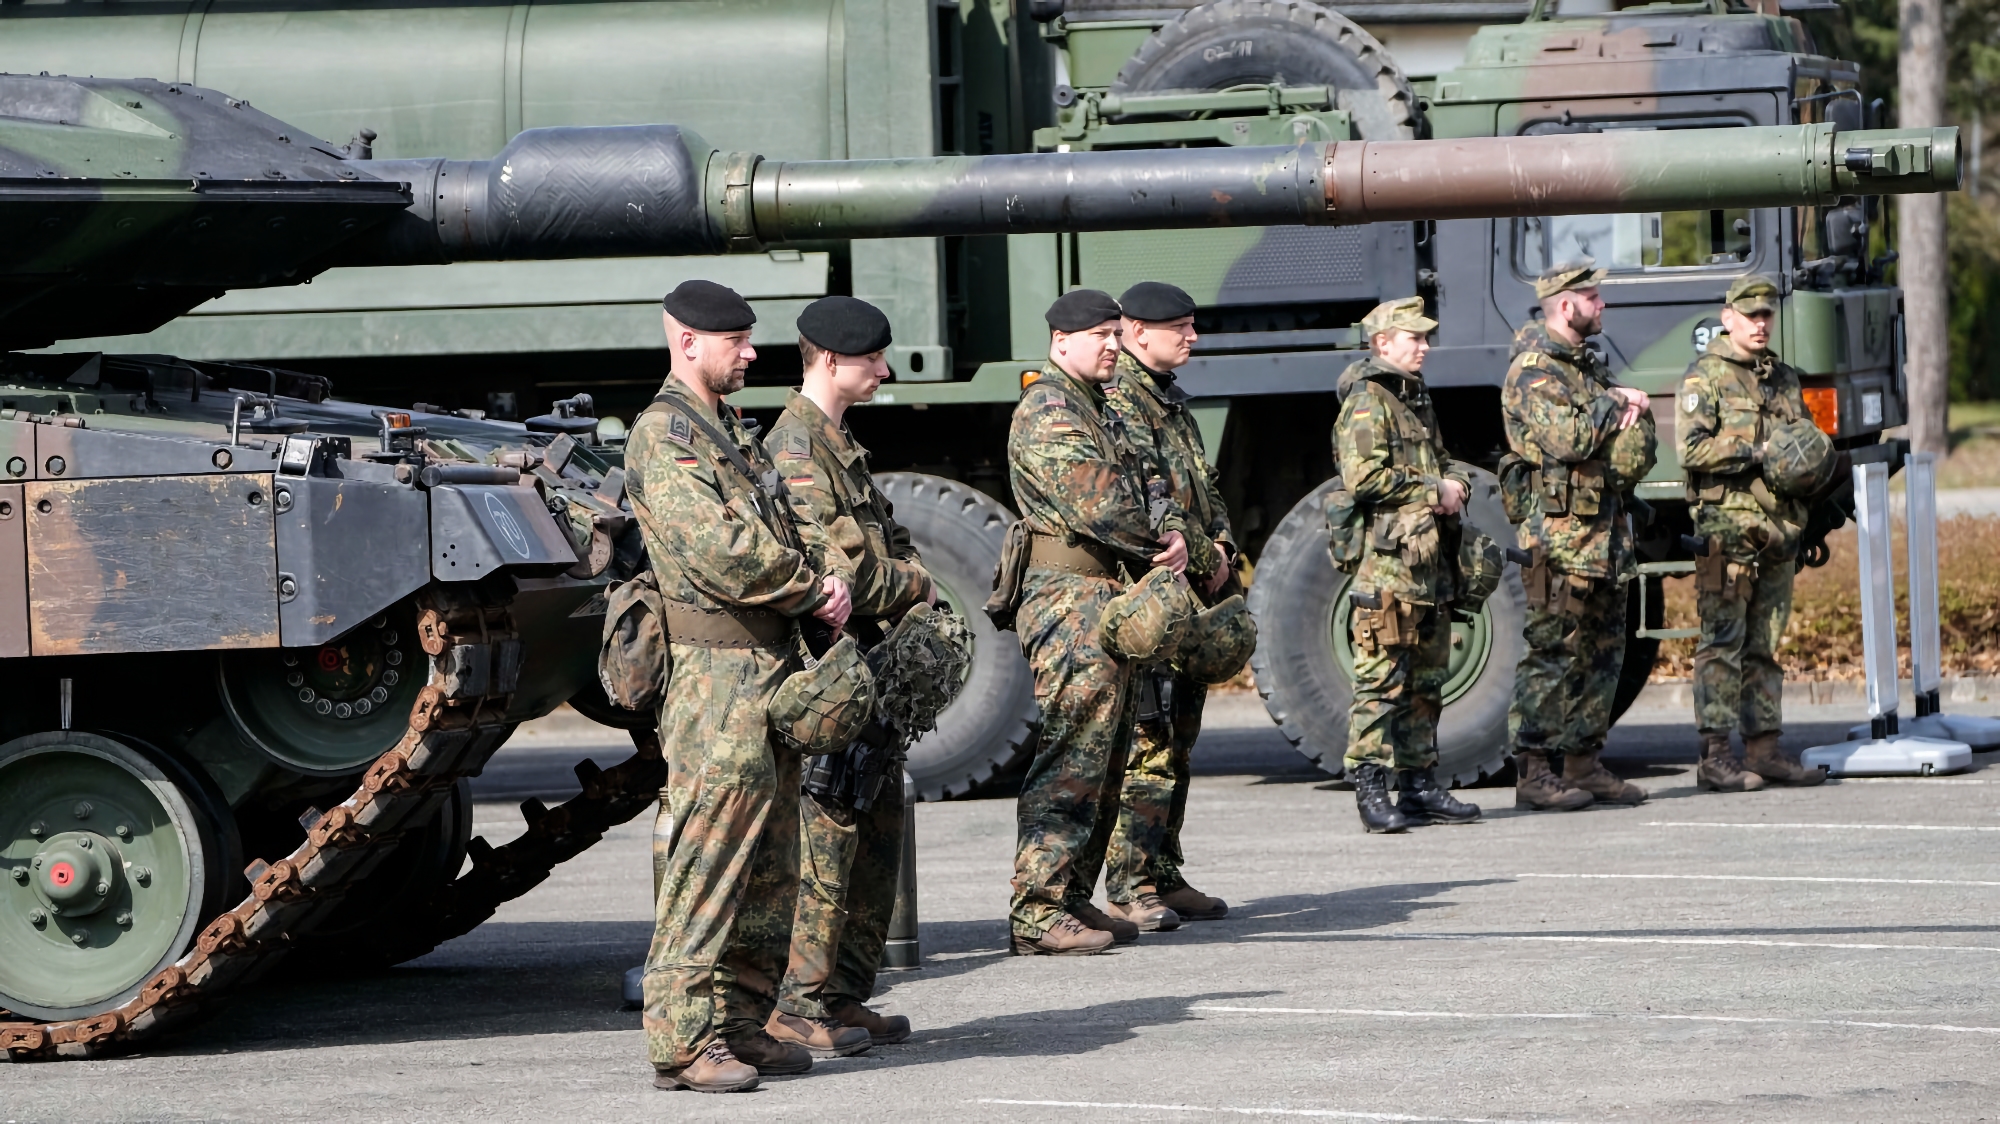 Lanzadores de misiles APWKS, tractores cisterna Oshkosh M1070, camionetas, vehículos aéreos no tripulados de reconocimiento y vehículos oruga teledirigidos: Alemania concede a Ucrania un nuevo paquete de ayuda militar